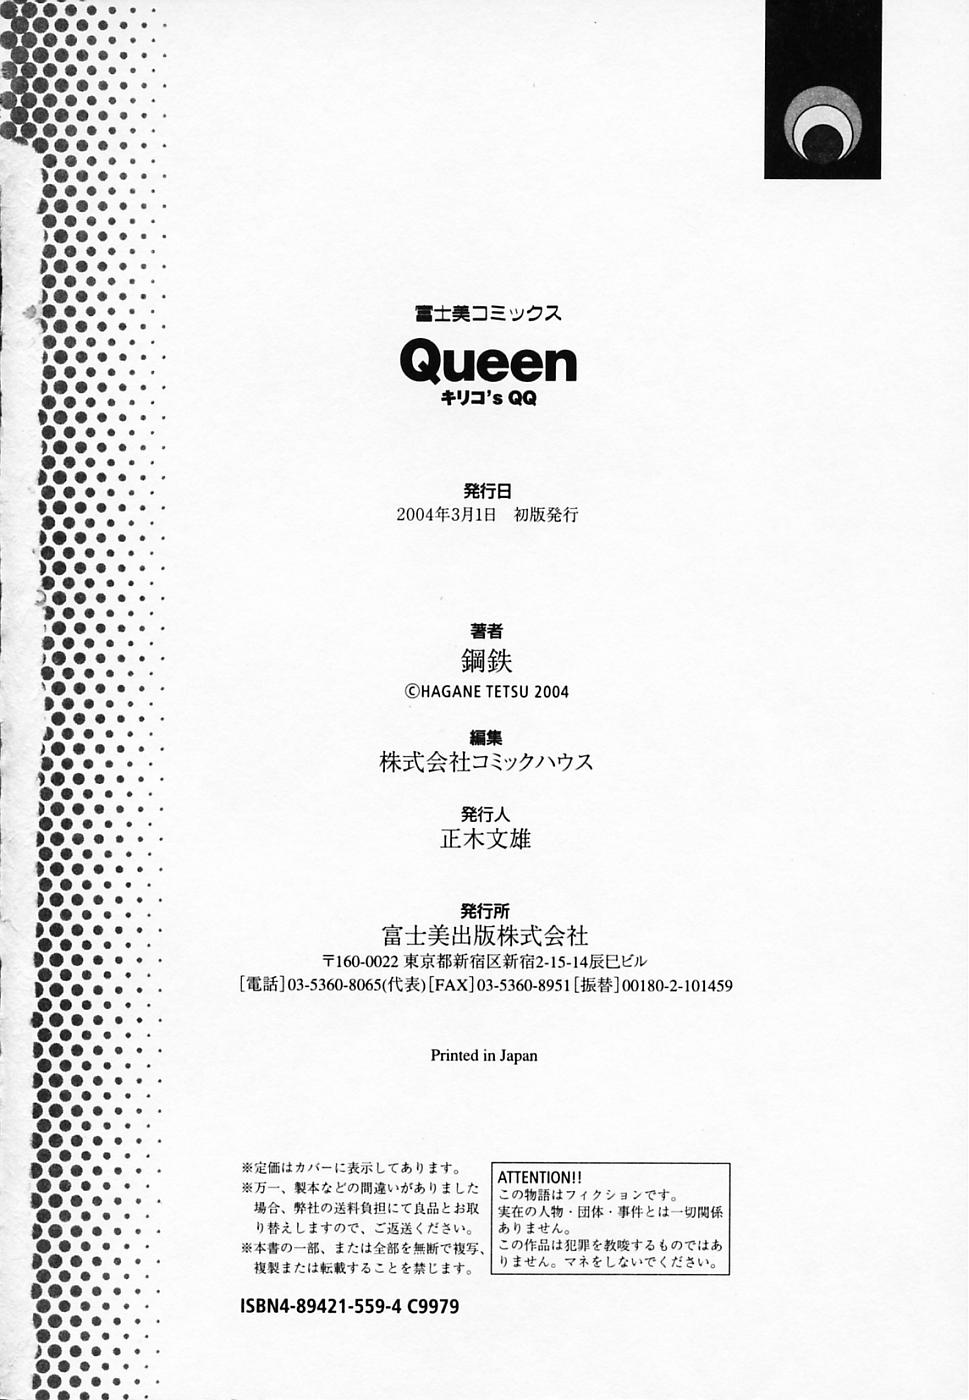 [鋼鉄] Queen キリコ's QQ